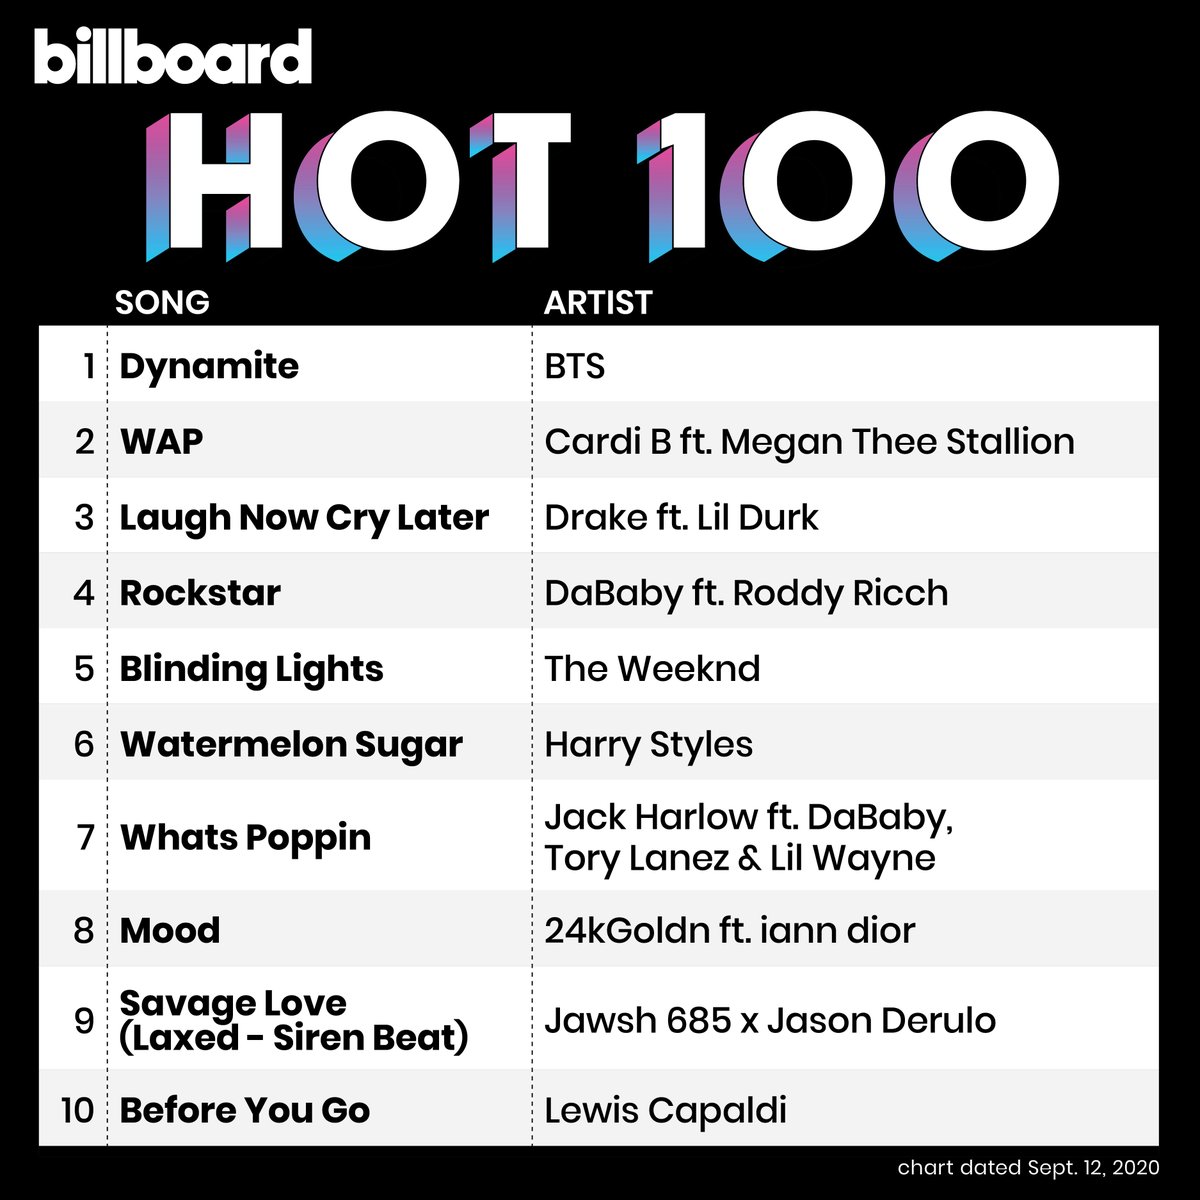 Merchandiser Så hurtigt som en flash Beskæftiget billboard charts on Twitter: "The #Hot100 top 10 (chart dated Sept. 12,  2020) https://t.co/IAG02DvVb8" / Twitter